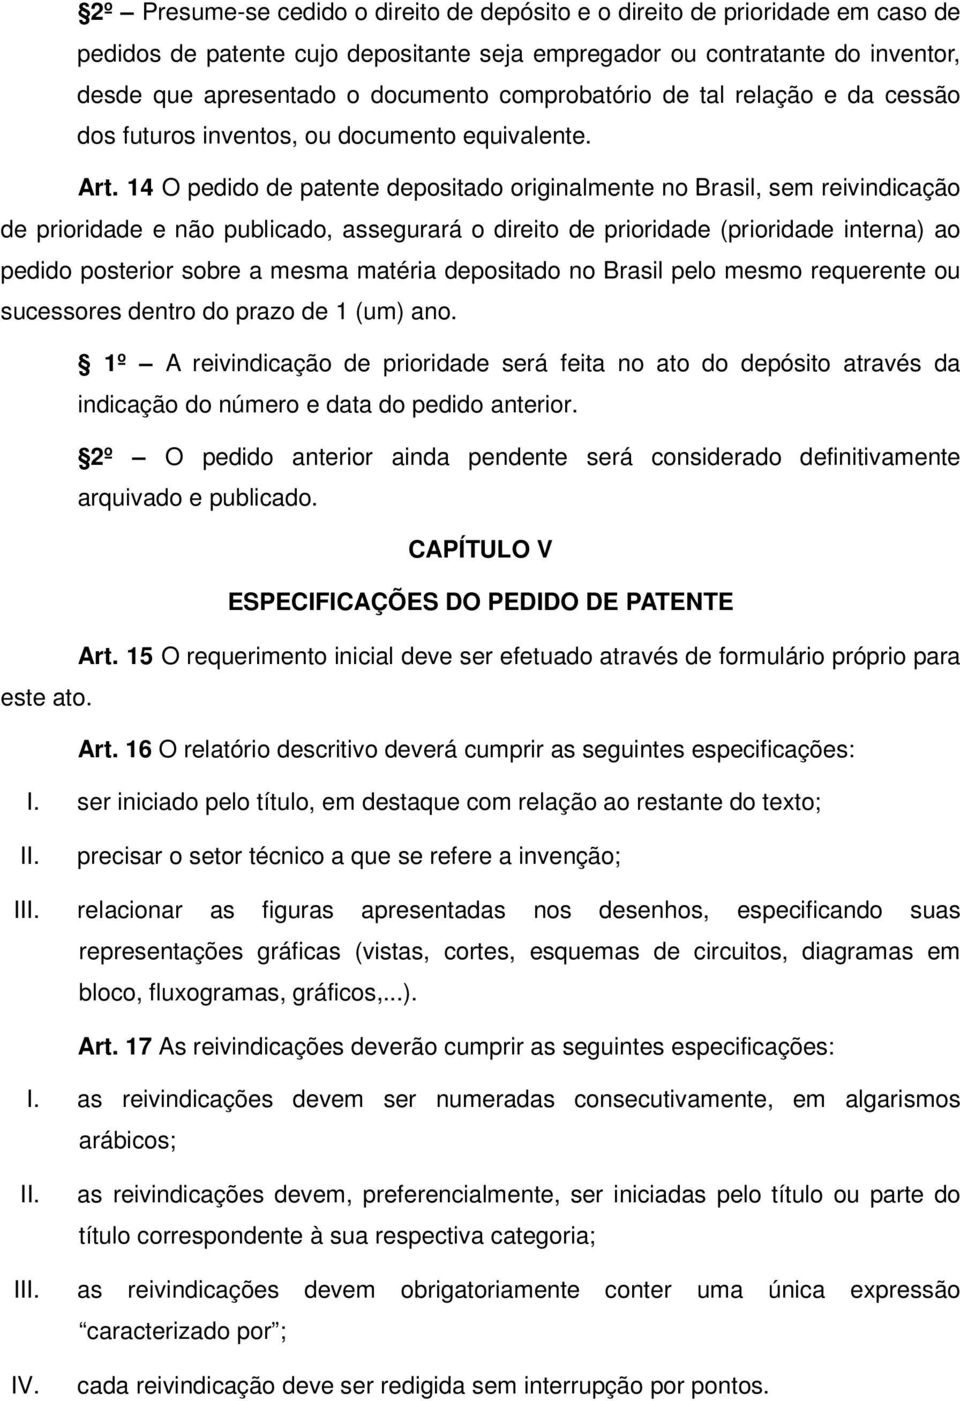 14 O pedido de patente depositado originalmente no Brasil, sem reivindicação de prioridade e não publicado, assegurará o direito de prioridade (prioridade interna) ao pedido posterior sobre a mesma